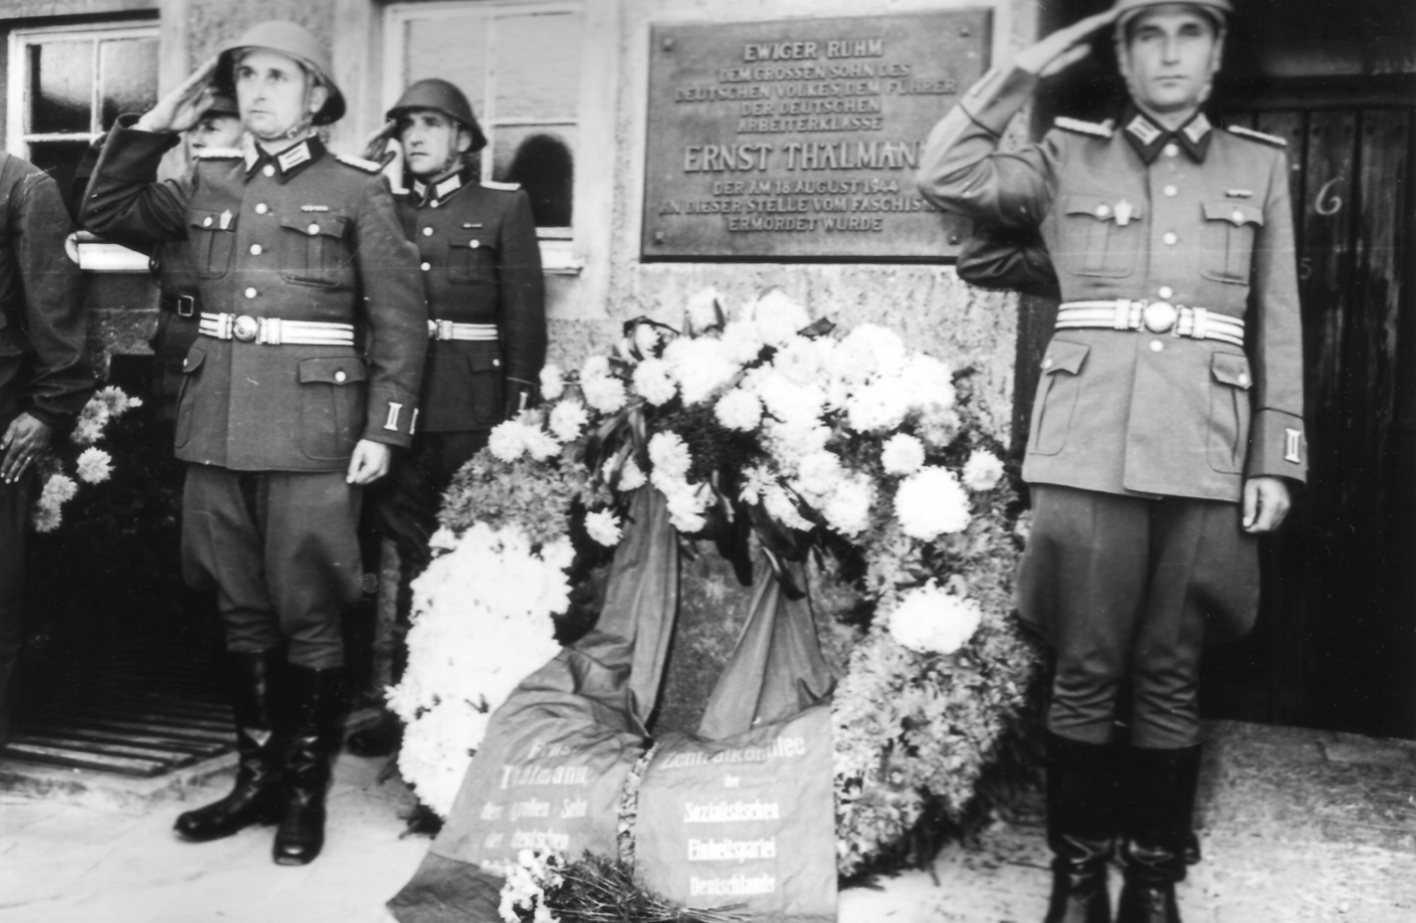 Drei Soldaten der NVA salutieren um einen Kranz der vor der Gedenktafel für Ernst Thälmann am Krematorium niedergelegt wurde.